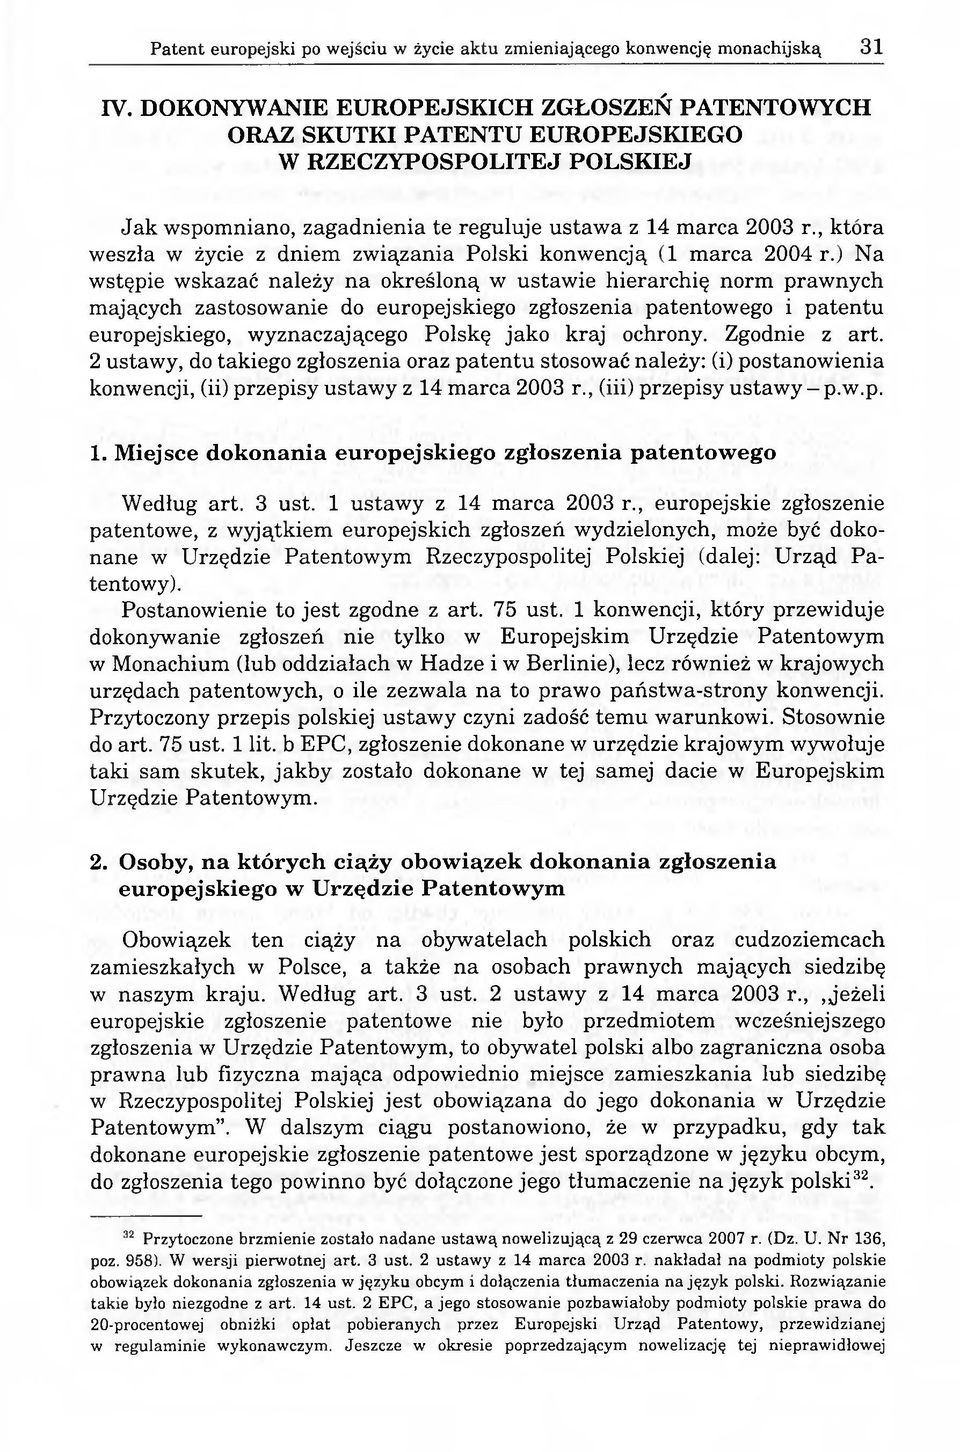 , która weszła w życie z dniem związania Polski konwencją (1 marca 2004 r.